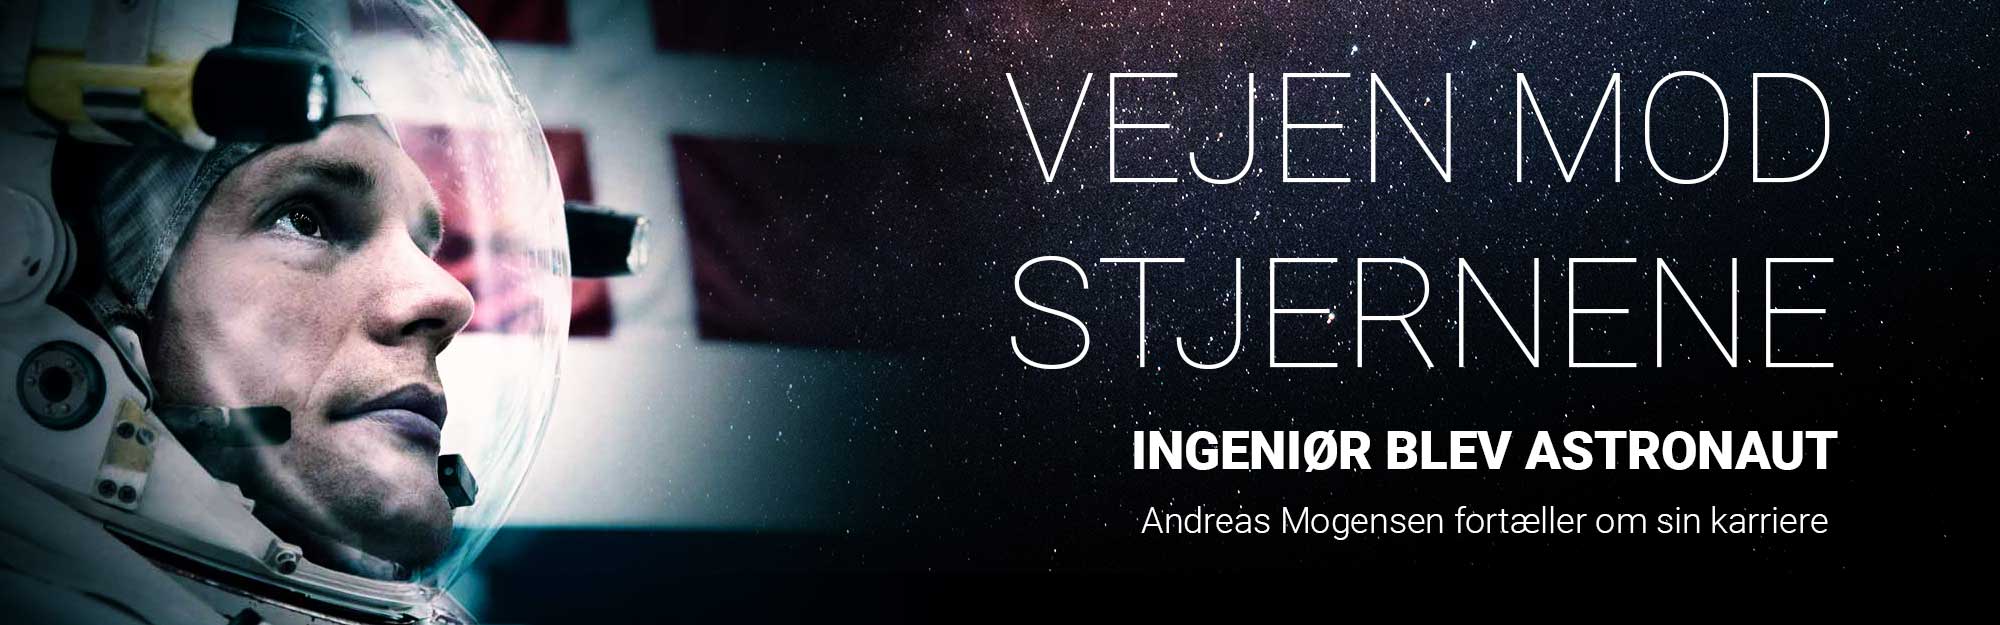 Andreas Mogensen: Ingeniørens vej til stjernene